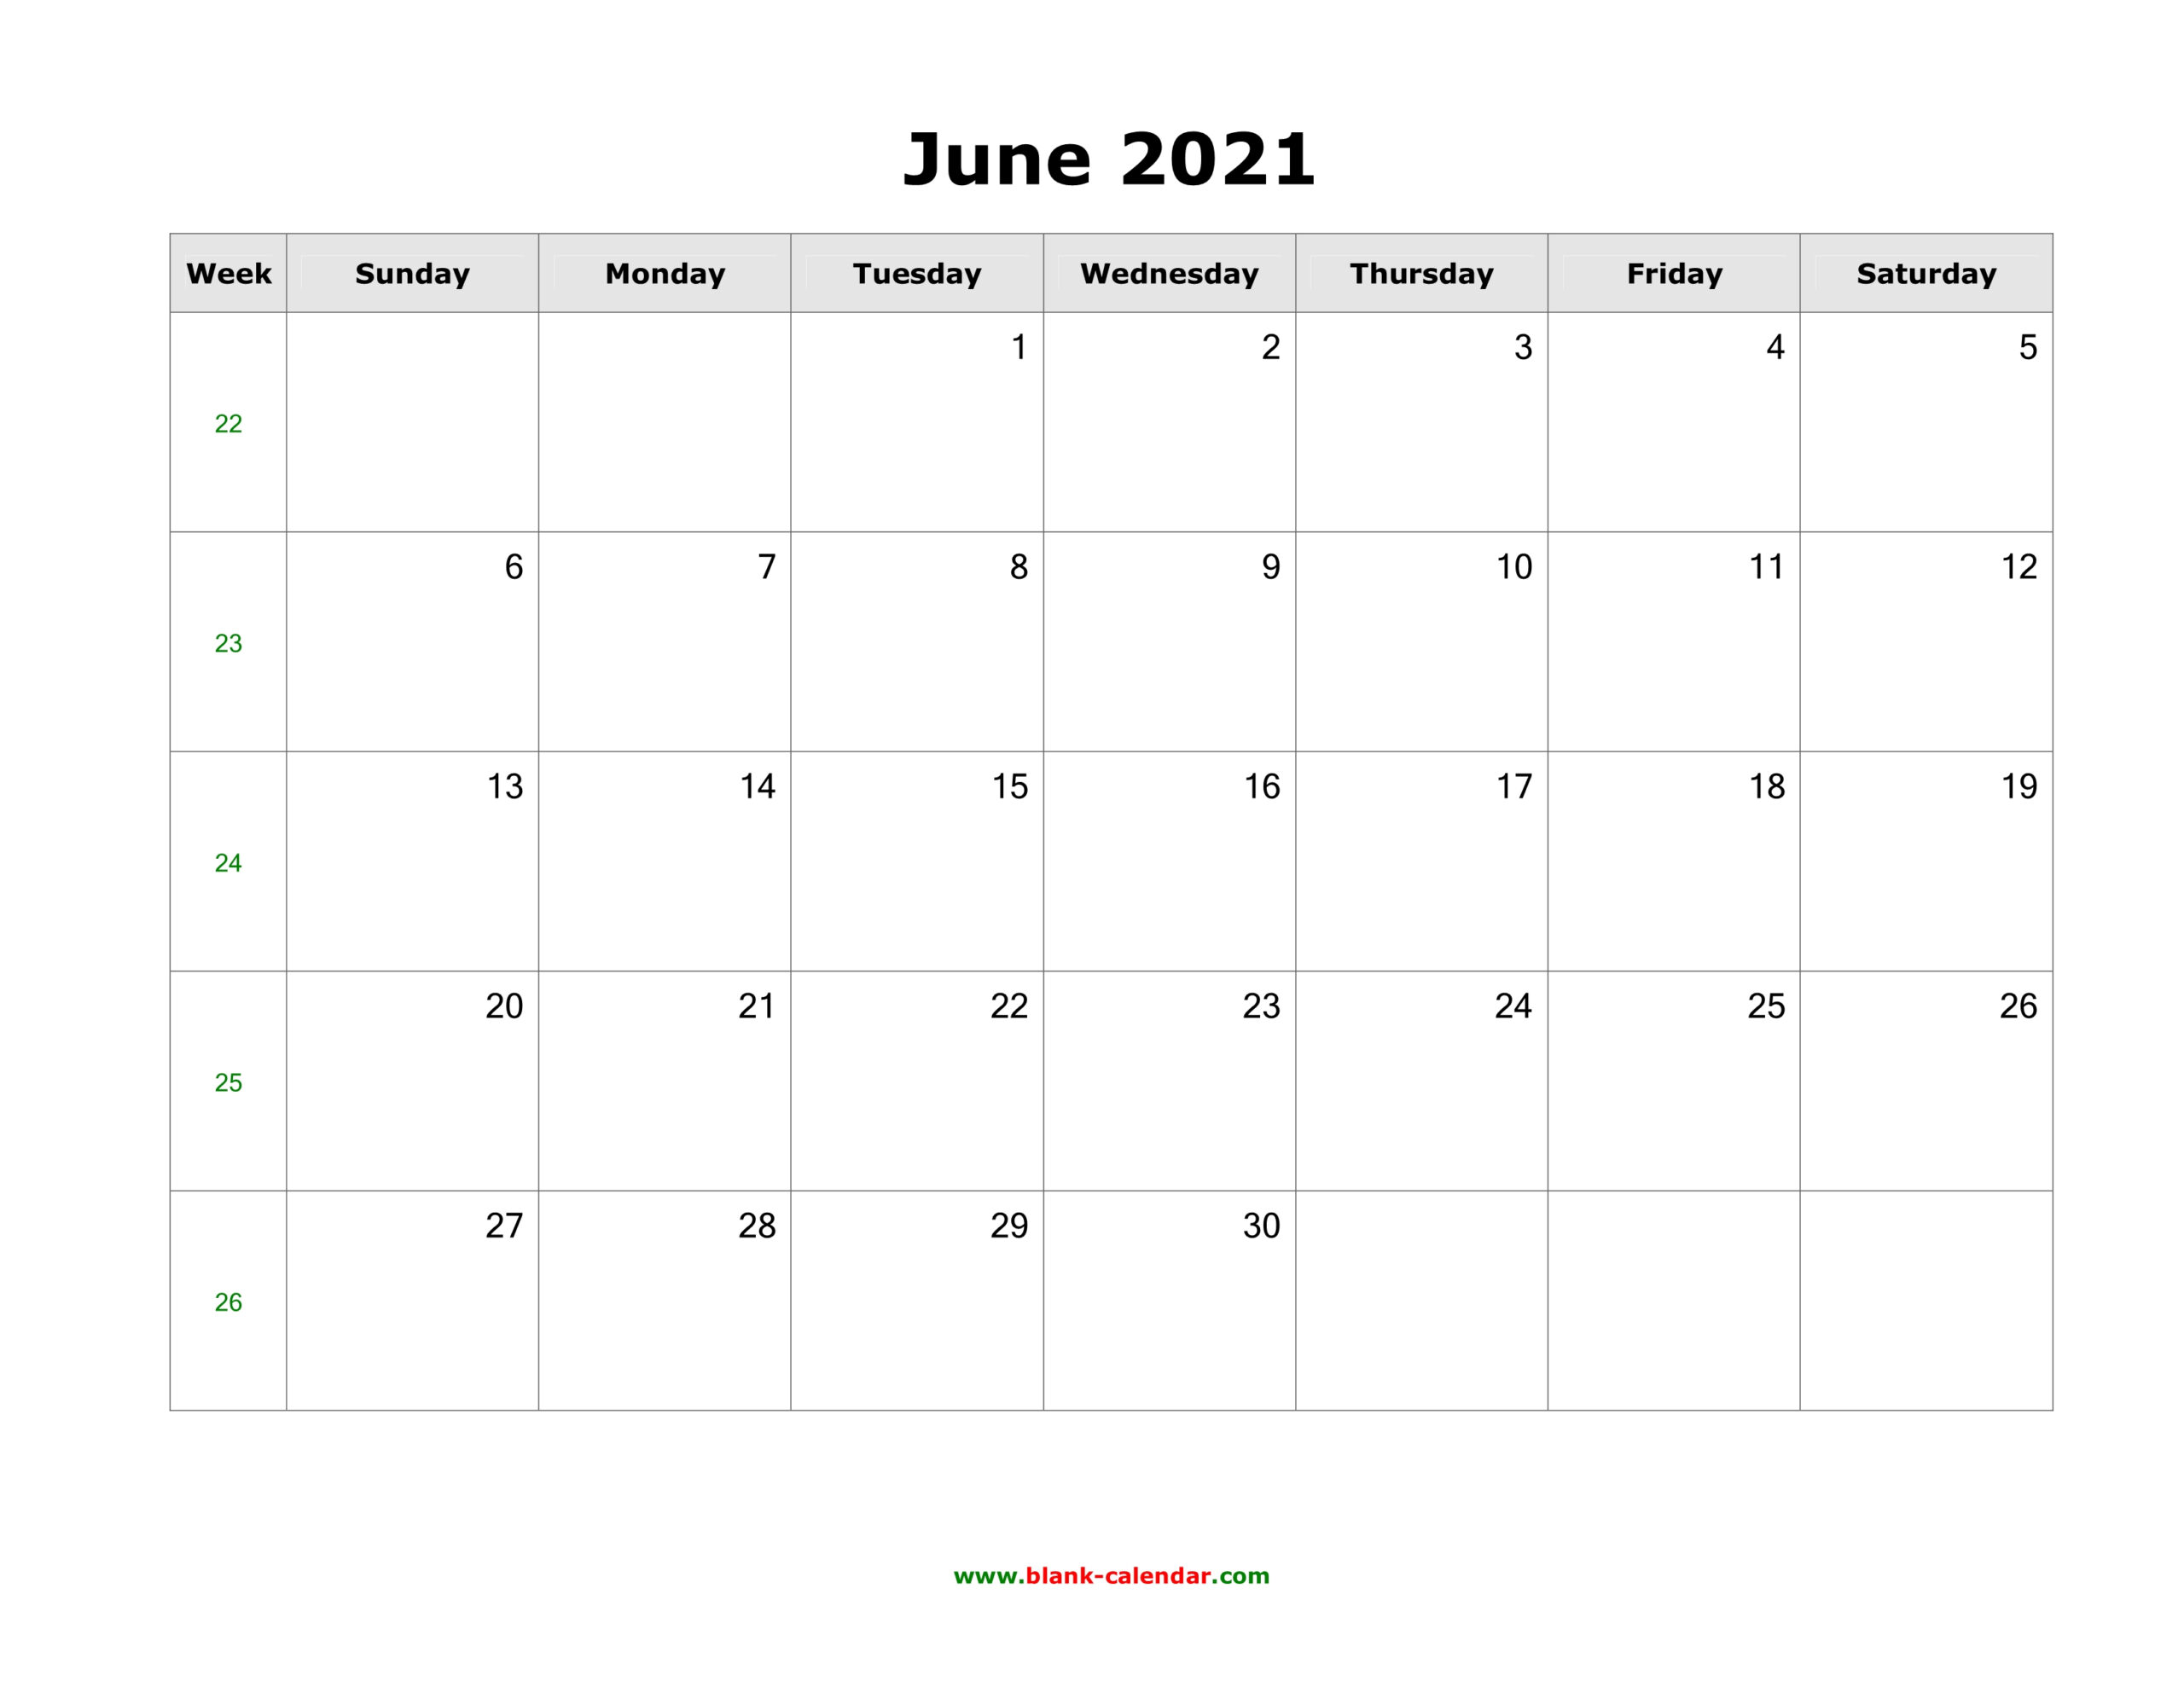 June 2021 Blank Calendar | Free Download Calendar Templates